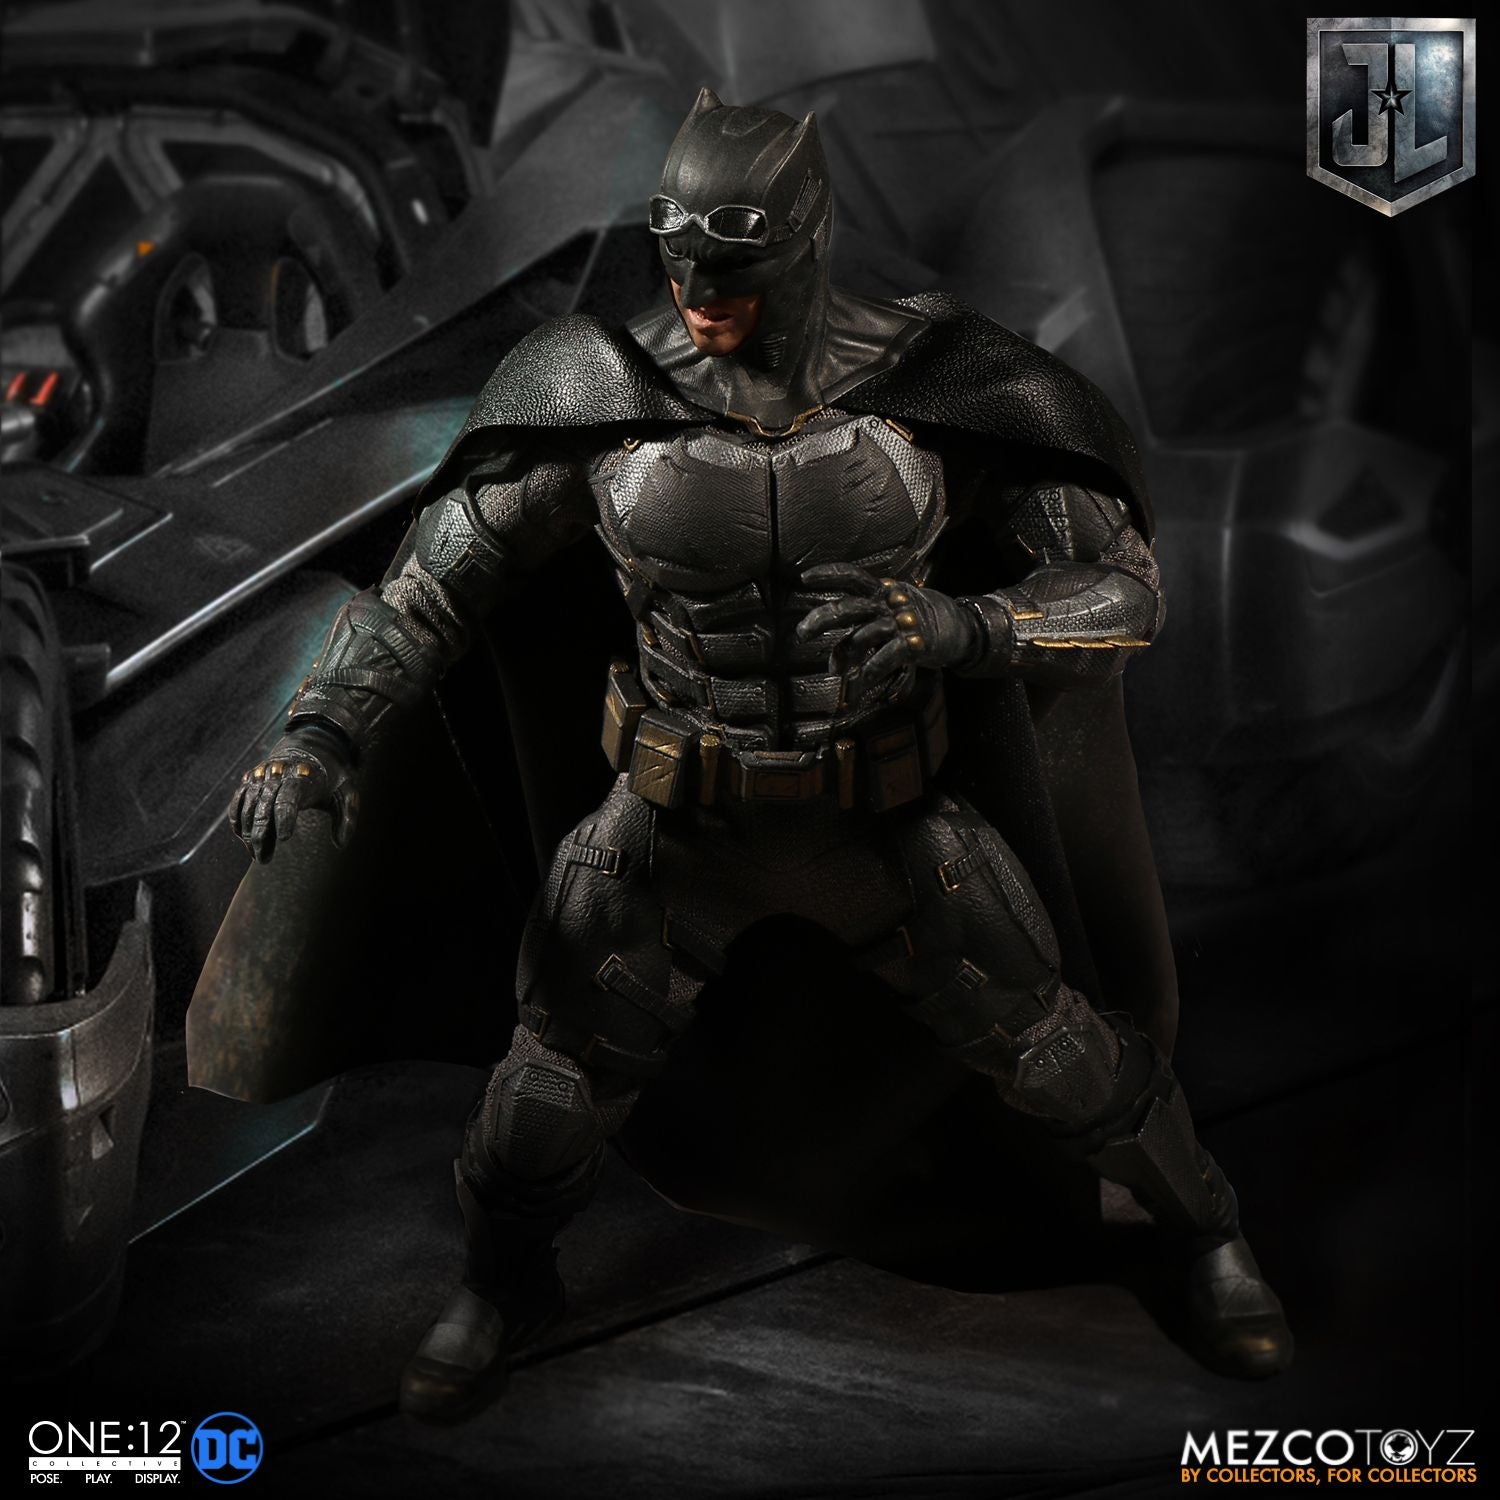 Mezco Toys One:12 Collective: DC Comics Justice League Batman Tactical Suite Action Figure 2